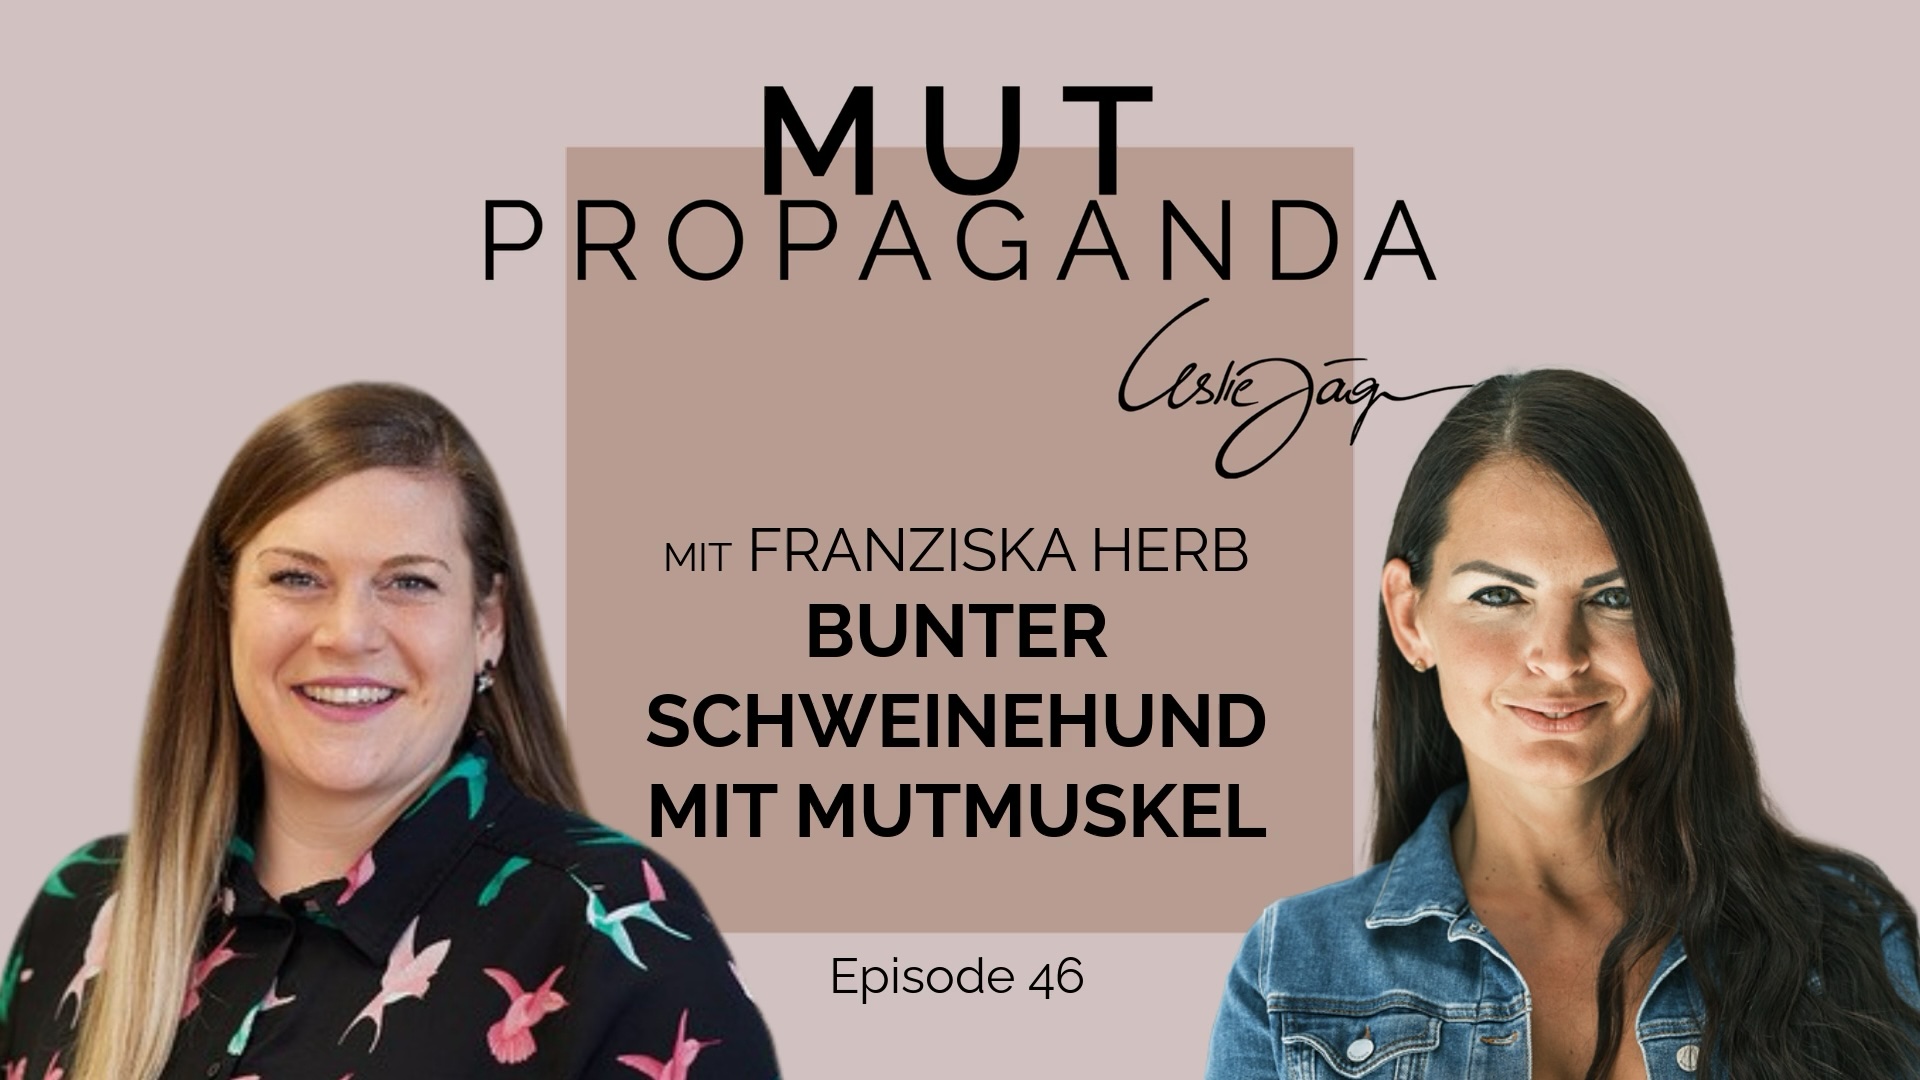 Bunter Schweinehund mit Mutmuskel – im Interview mit Franziska Herb